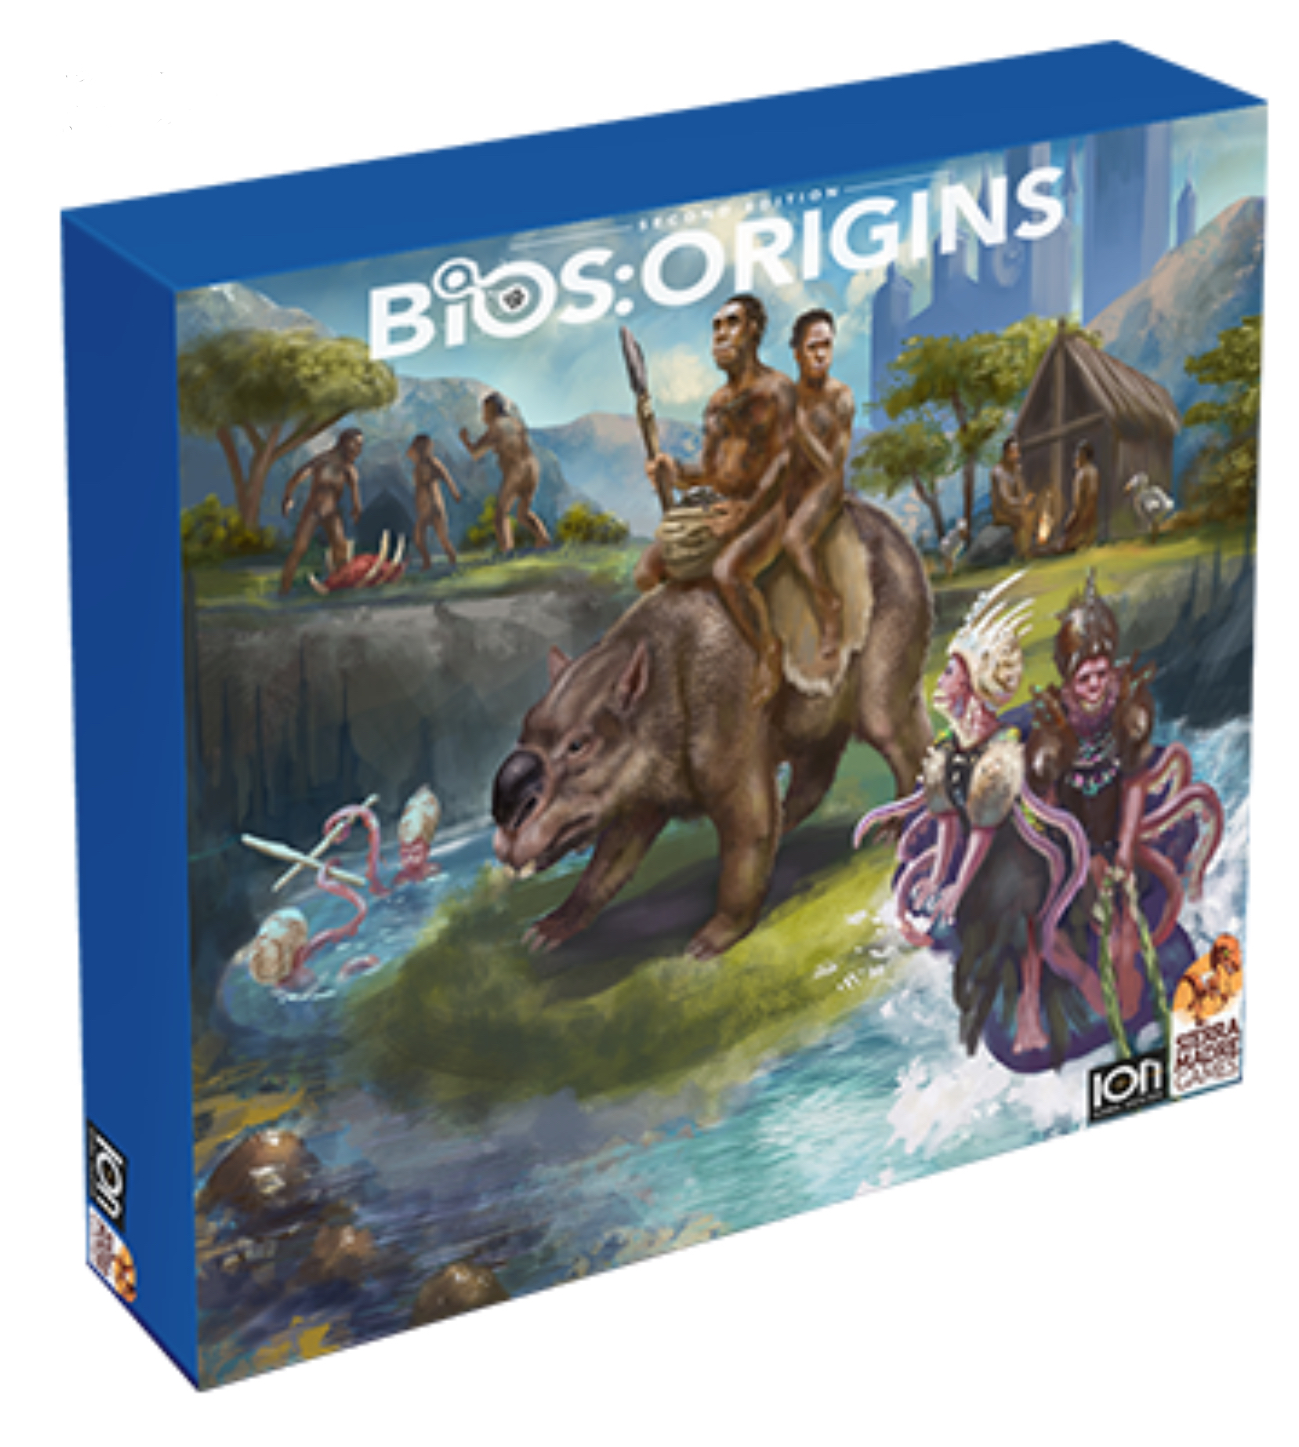 Bios:Origins (2nd edition)